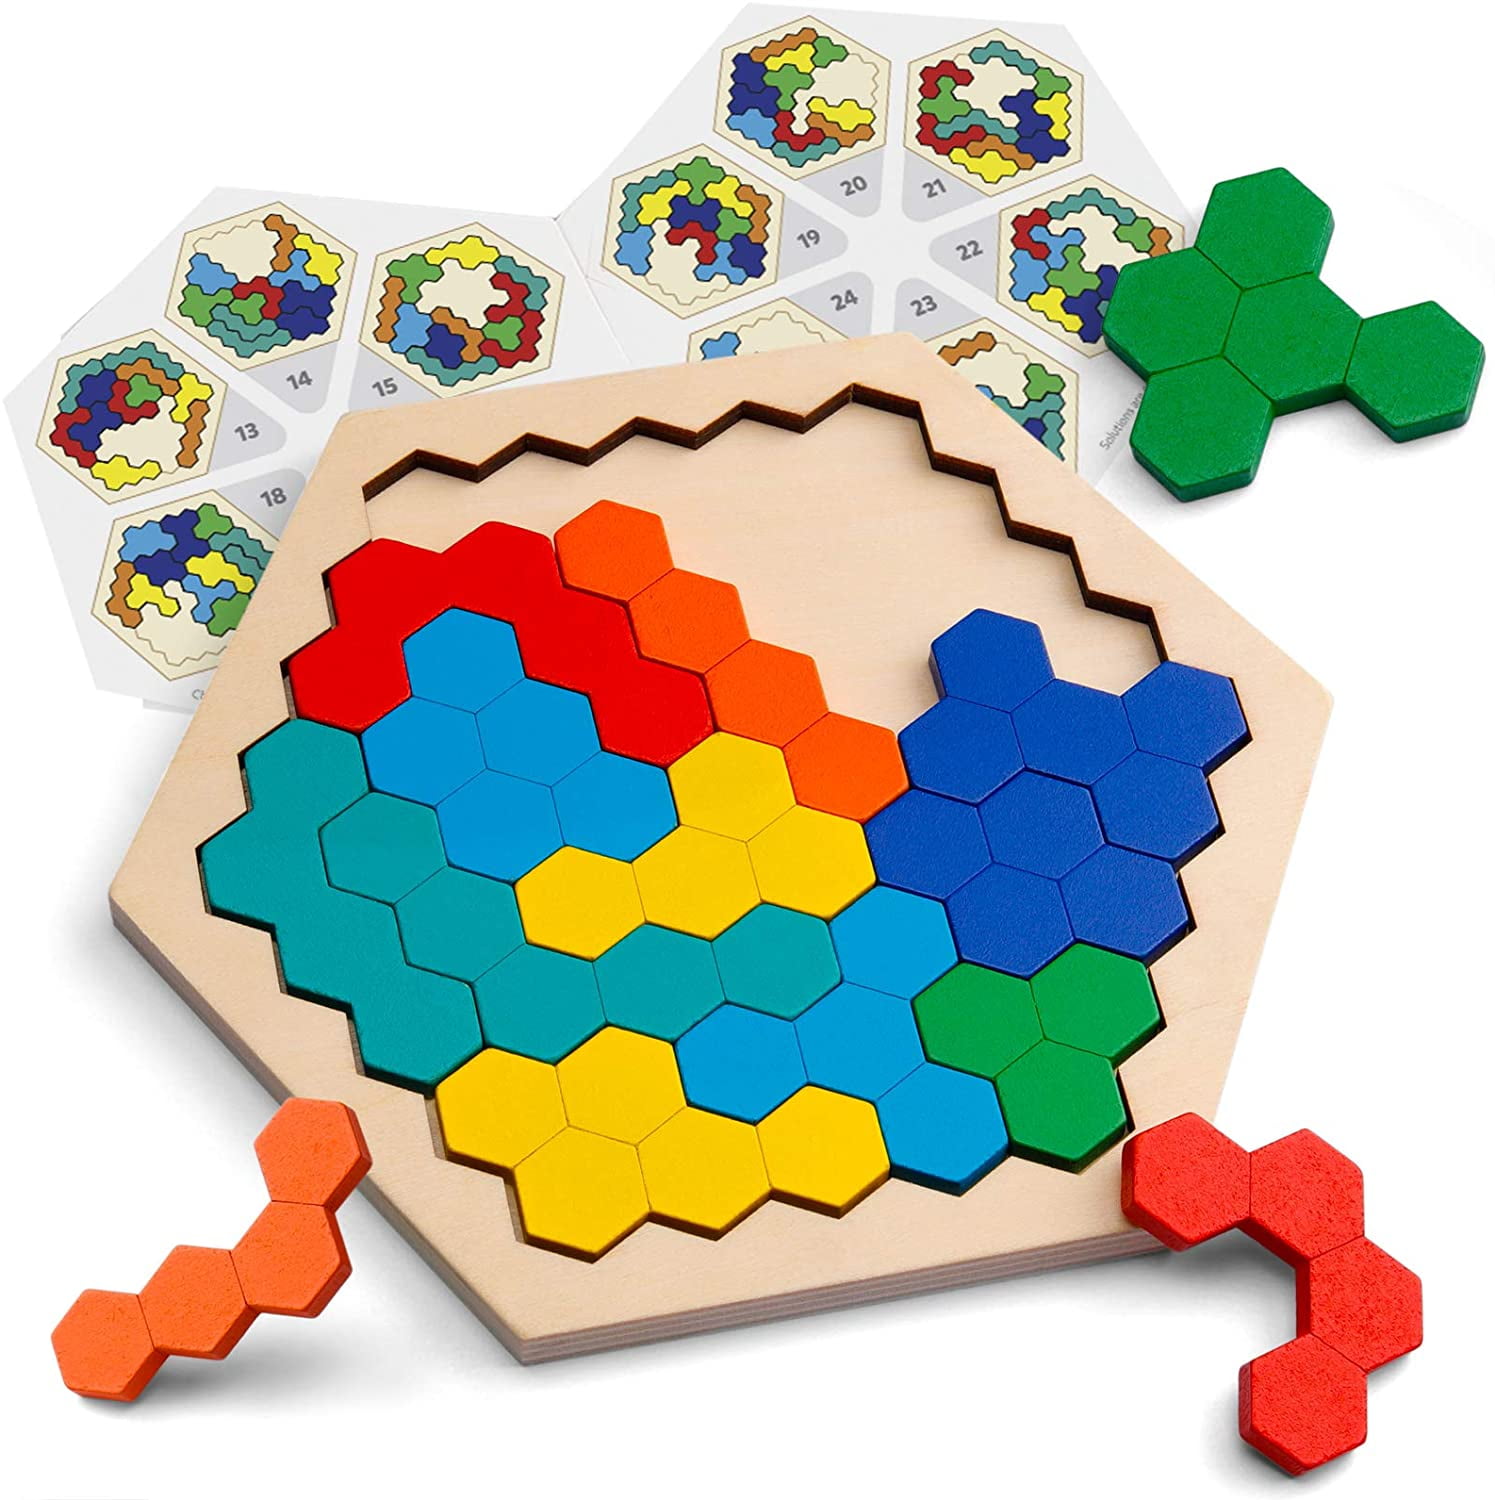 8 Set Montessori Math Geometry Educational Toy Kids Intelligence Developing 